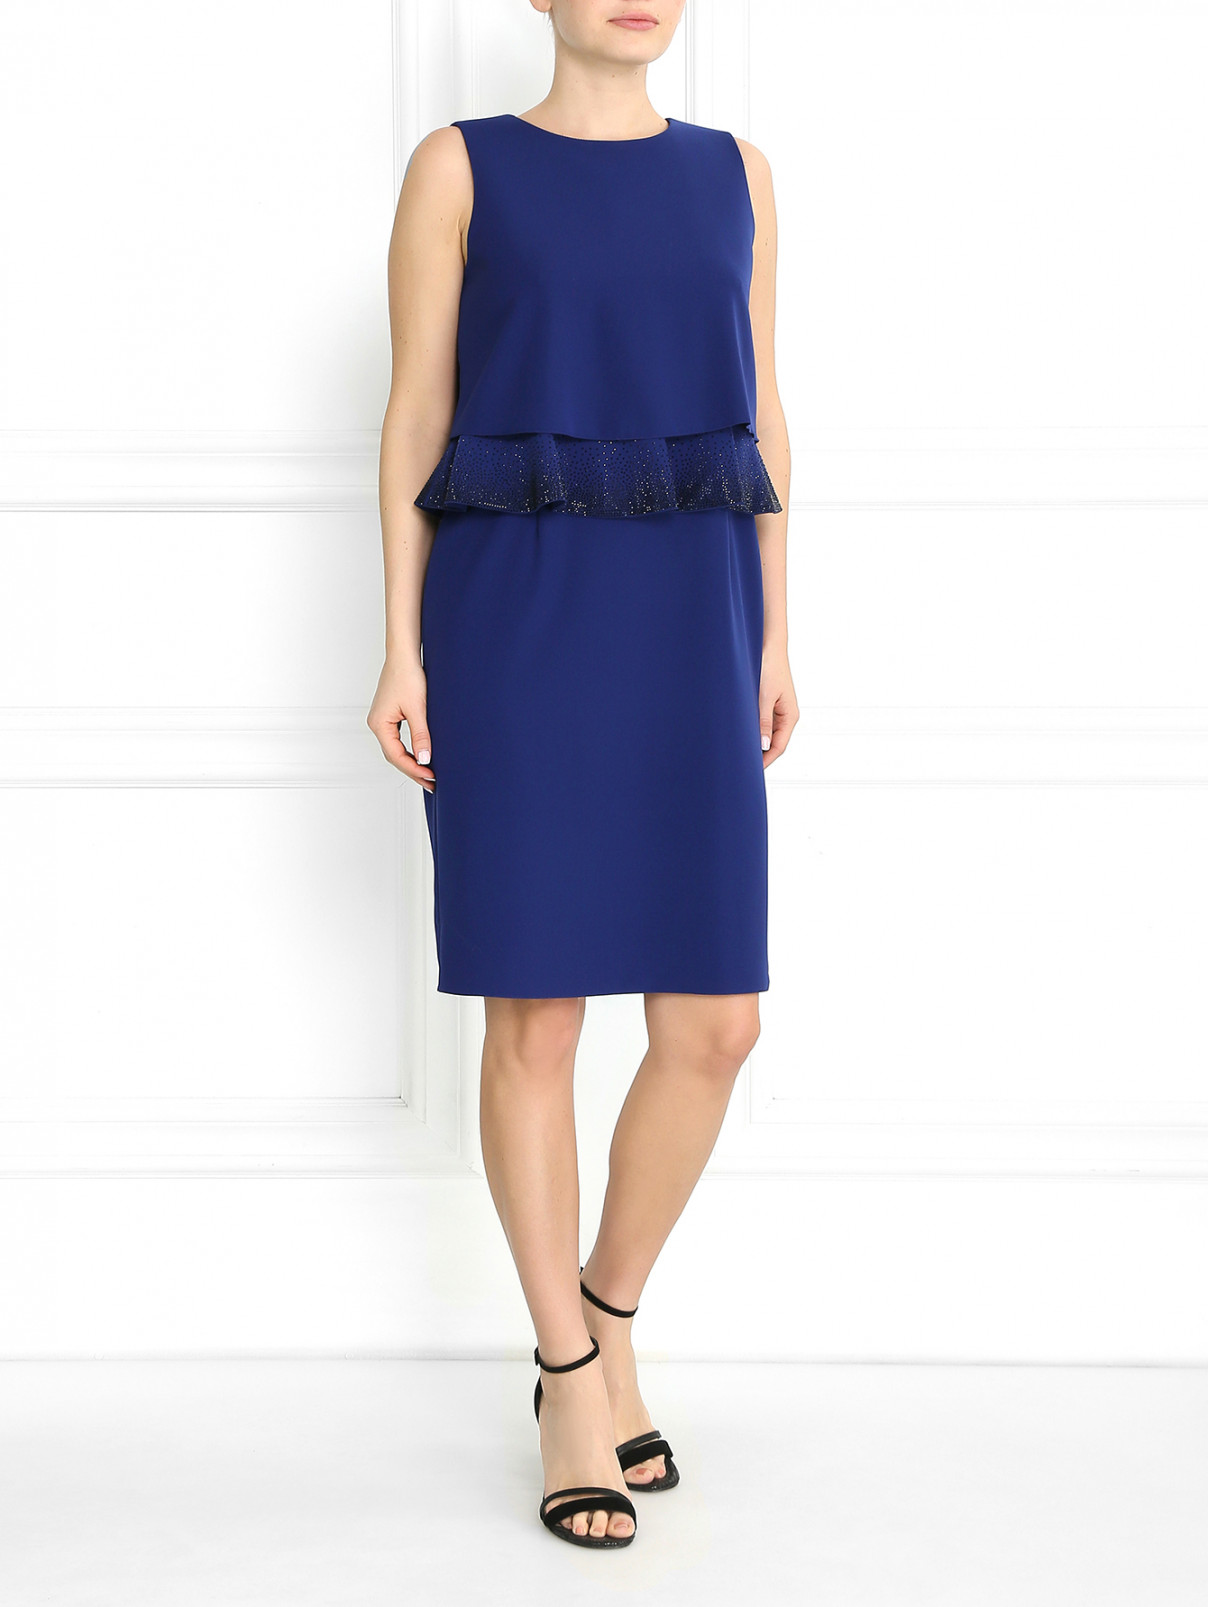 Платье с баской декорированное стразами Armani Collezioni  –  Модель Общий вид  – Цвет:  Синий